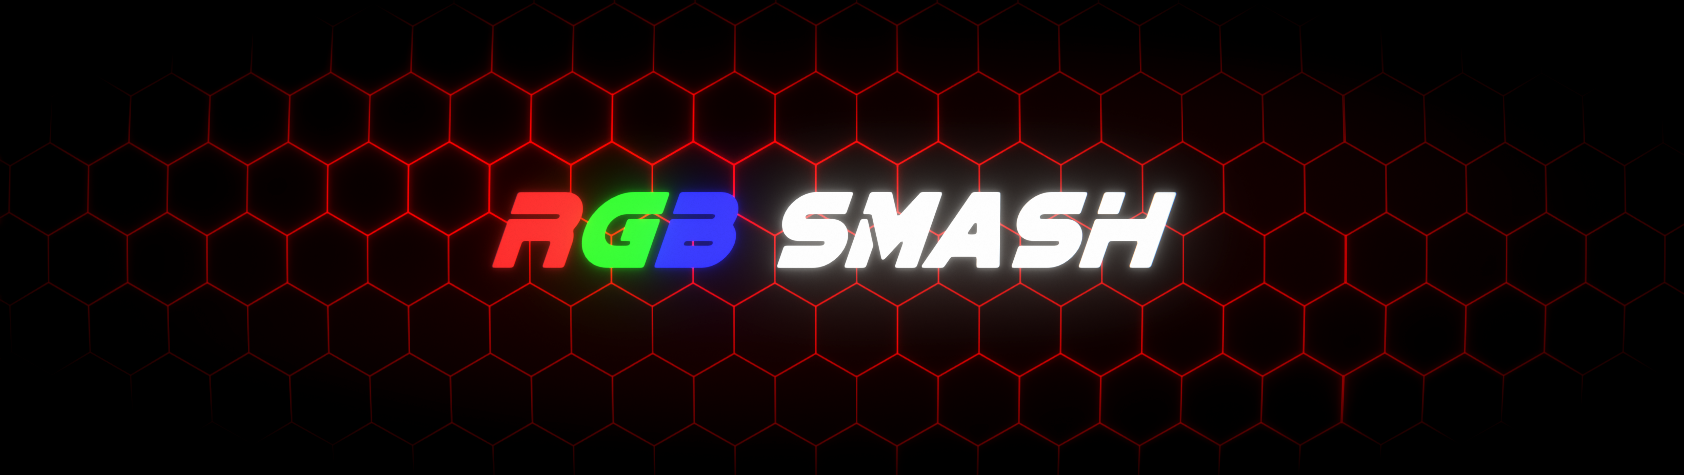 RGB Smash